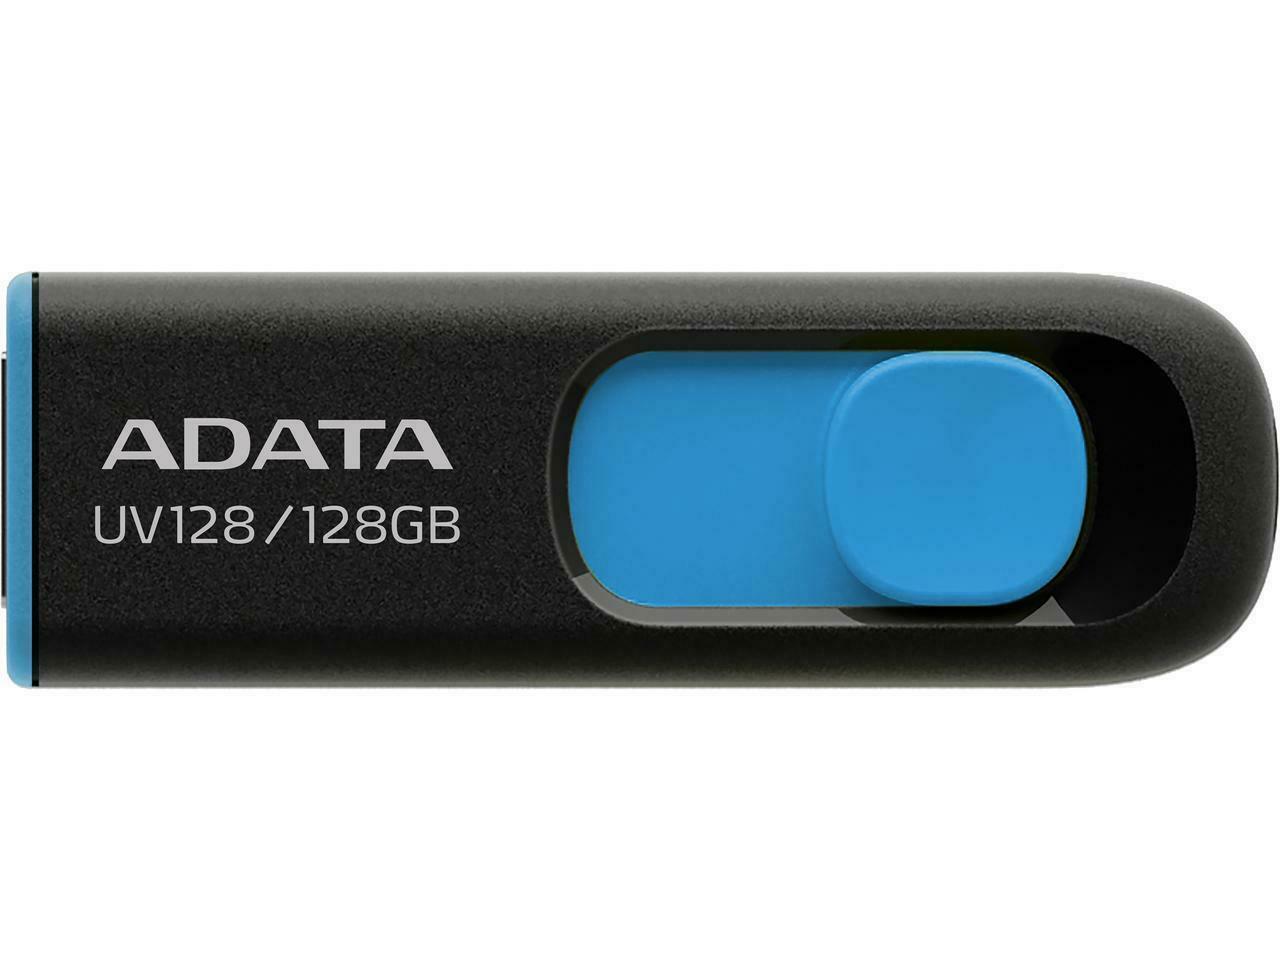 ADATA 128GB UV128 USB 3.2 Gen 1 Flash Drive - Black/Blue - Store 974 | ستور ٩٧٤